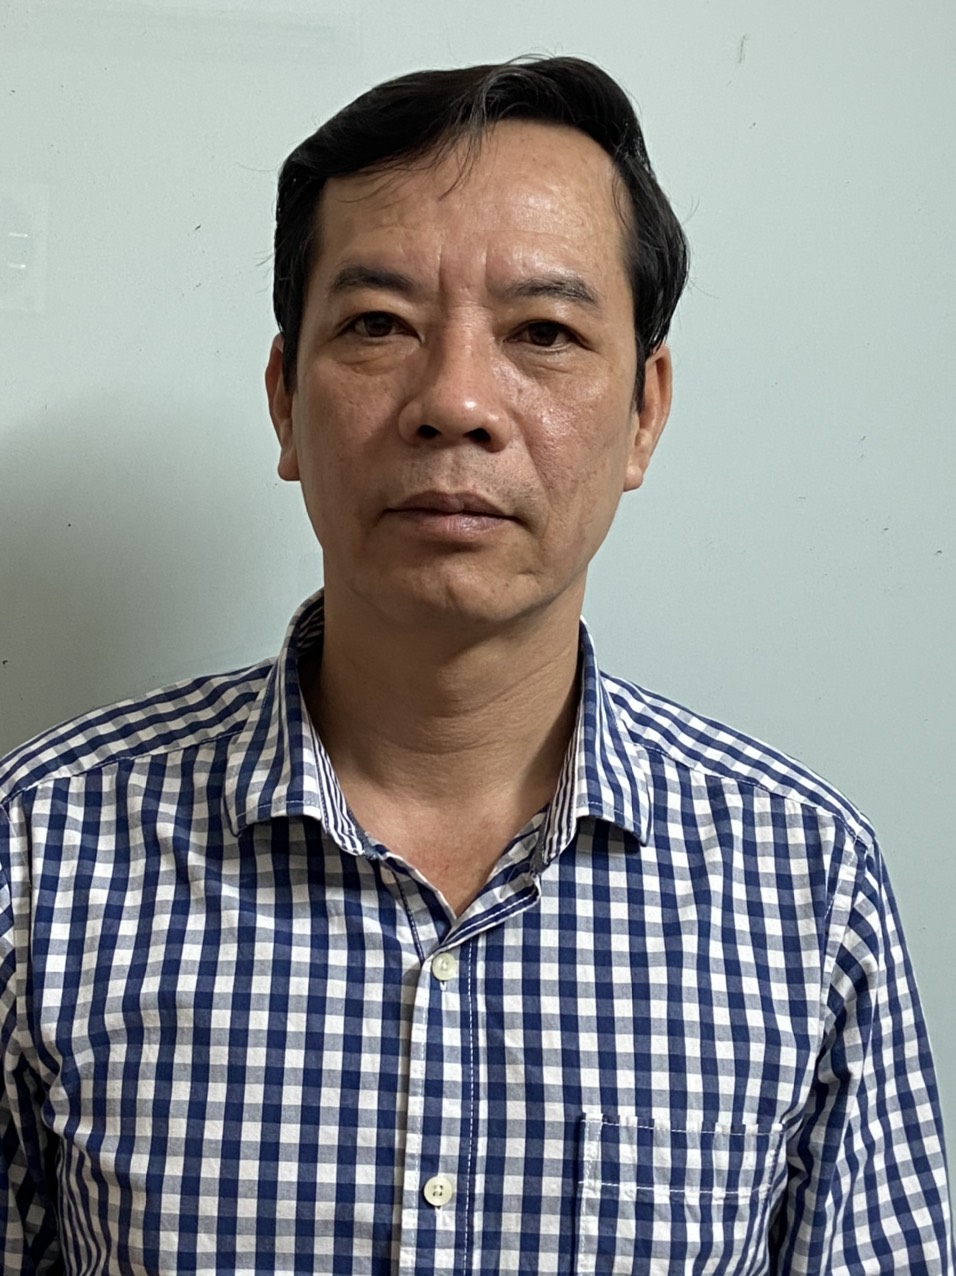 Nguyễn Vinh Quang - Lãnh đạo doanh nghiệp | VietstockFinance